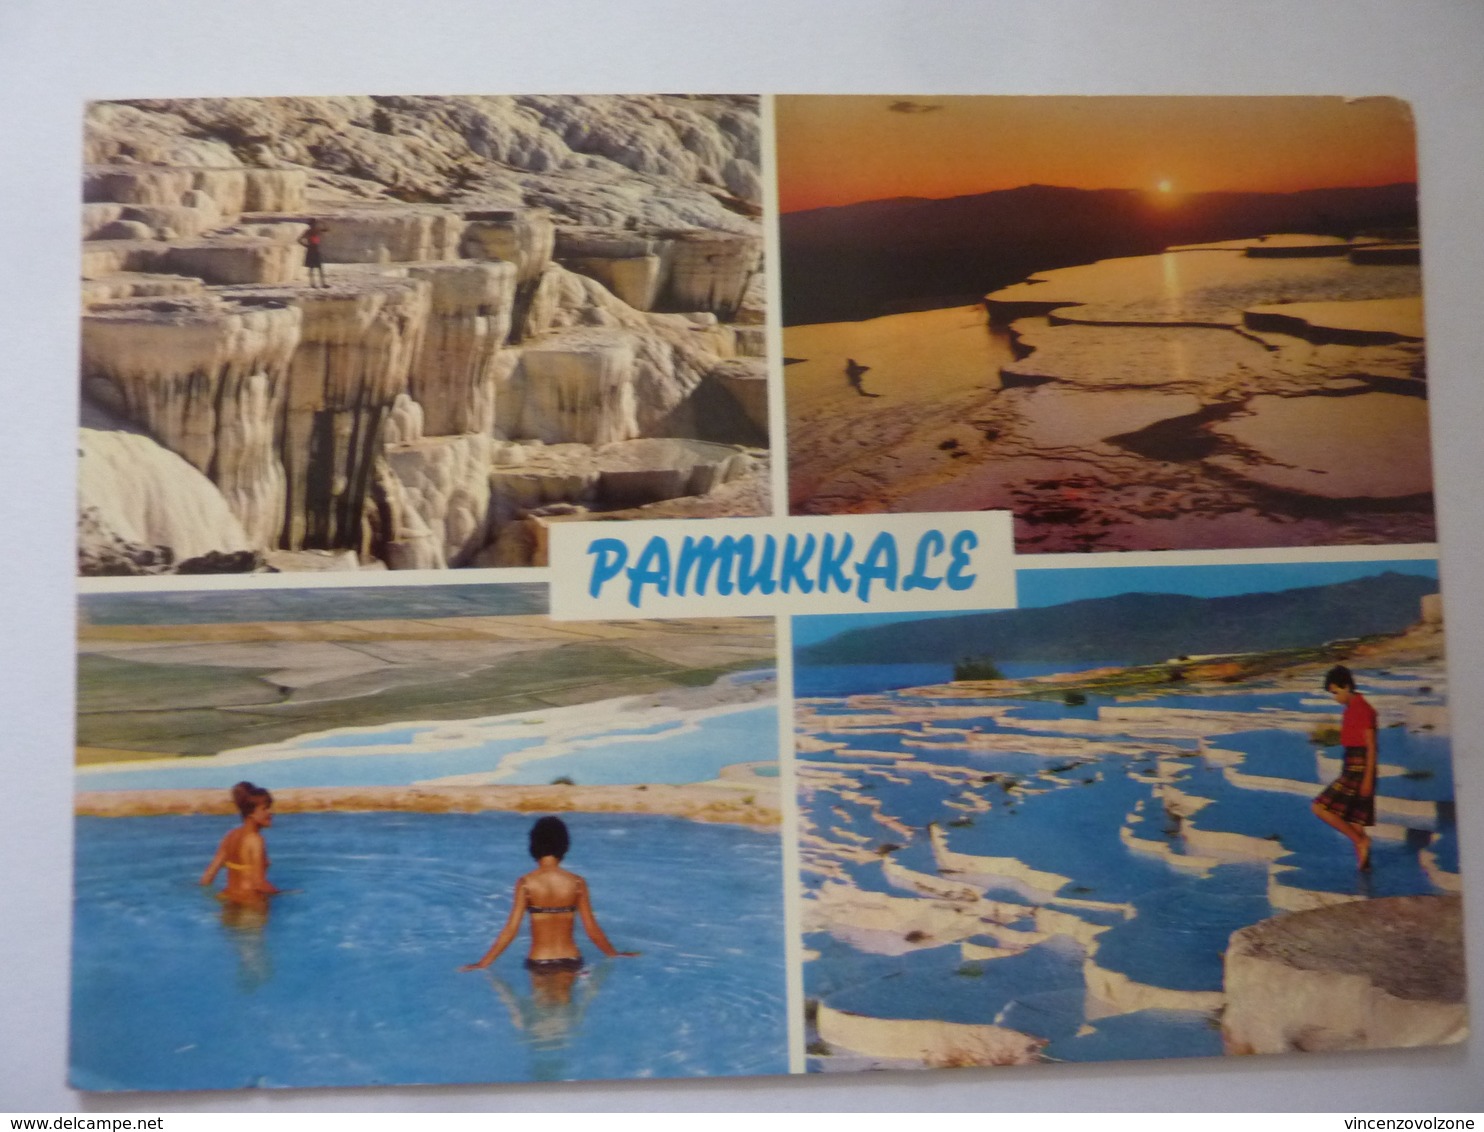 Cartolina Viaggiata "PAMMUKALE" 1967 - Turchia